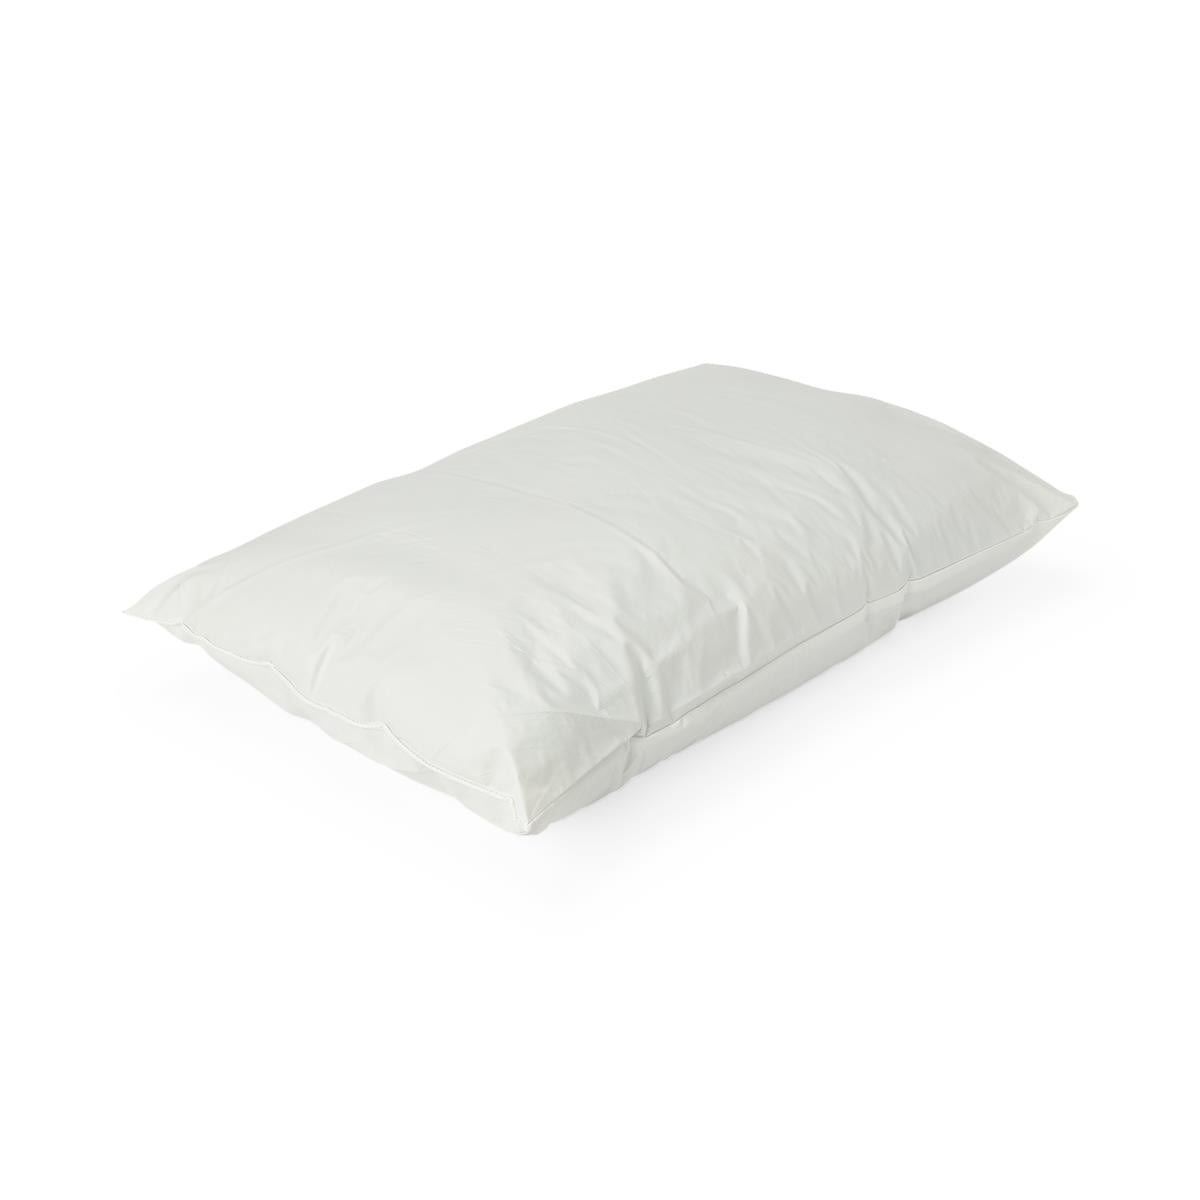 MedSoft Pillows